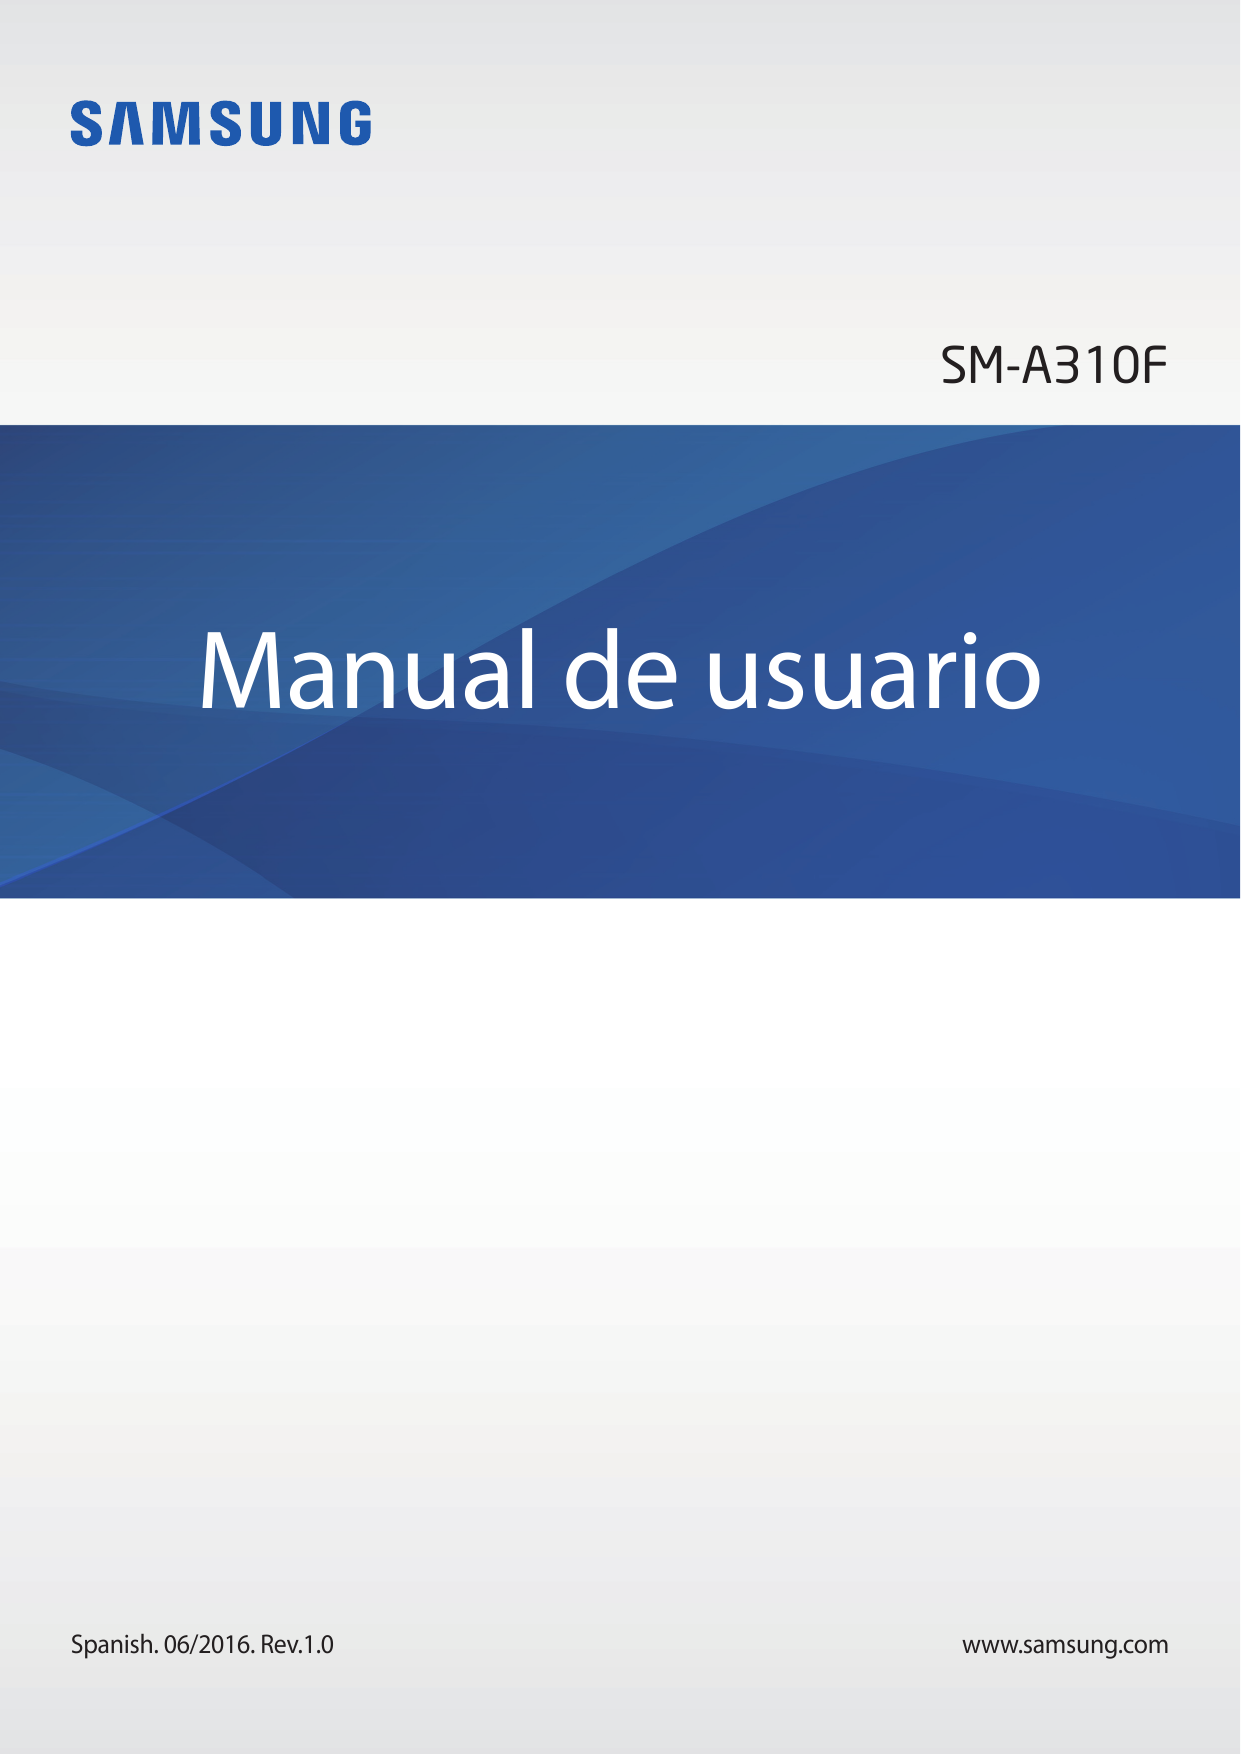 SM-A310FManual de usuarioSpanish. 06/2016. Rev.1.0www.samsung.com